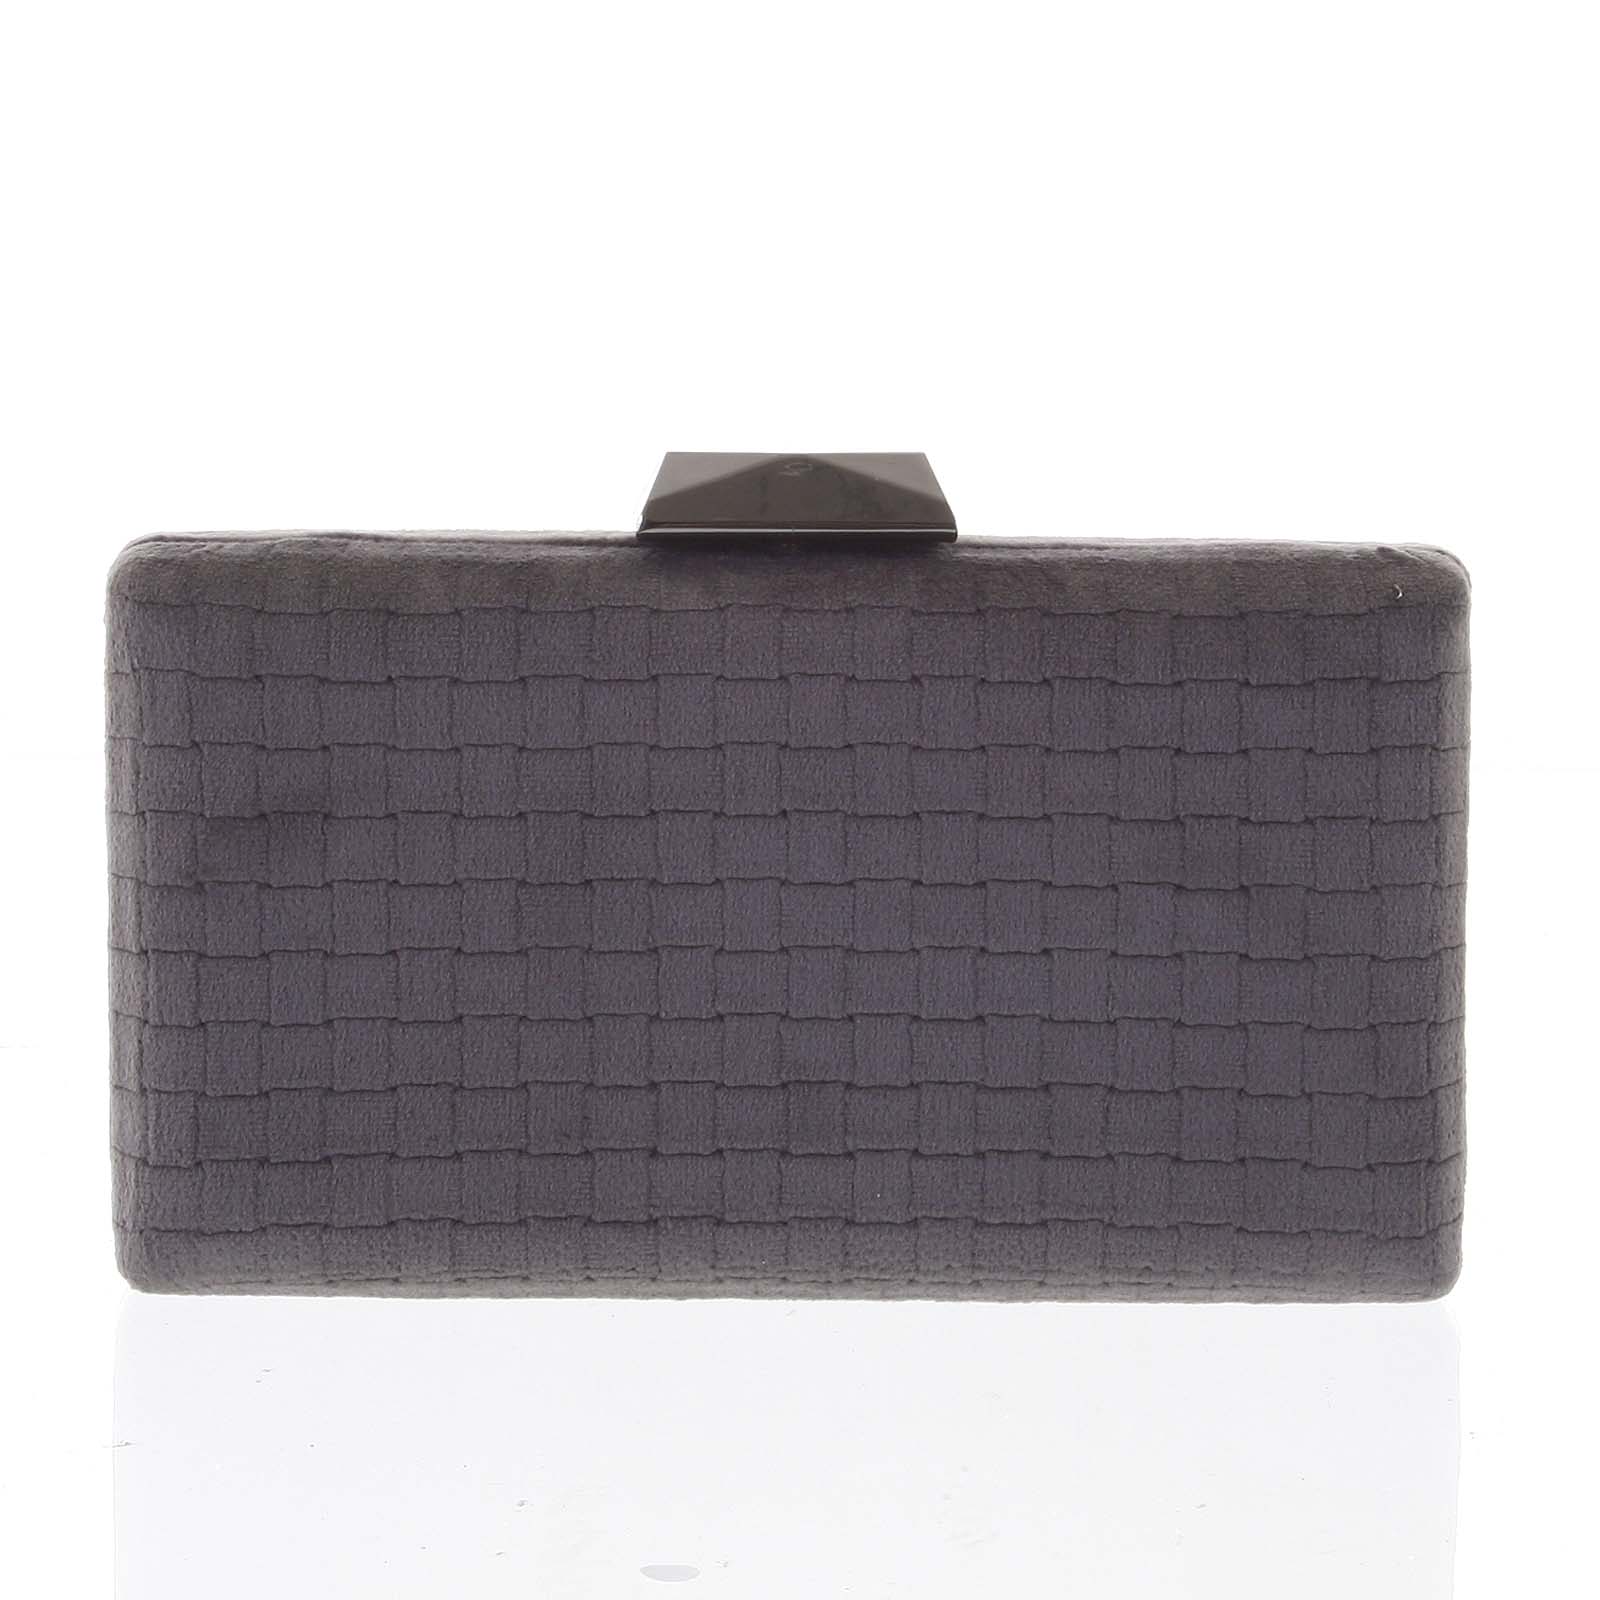 Luxusná semišová originálna tmavosivá listová kabelka - Delami ZL093